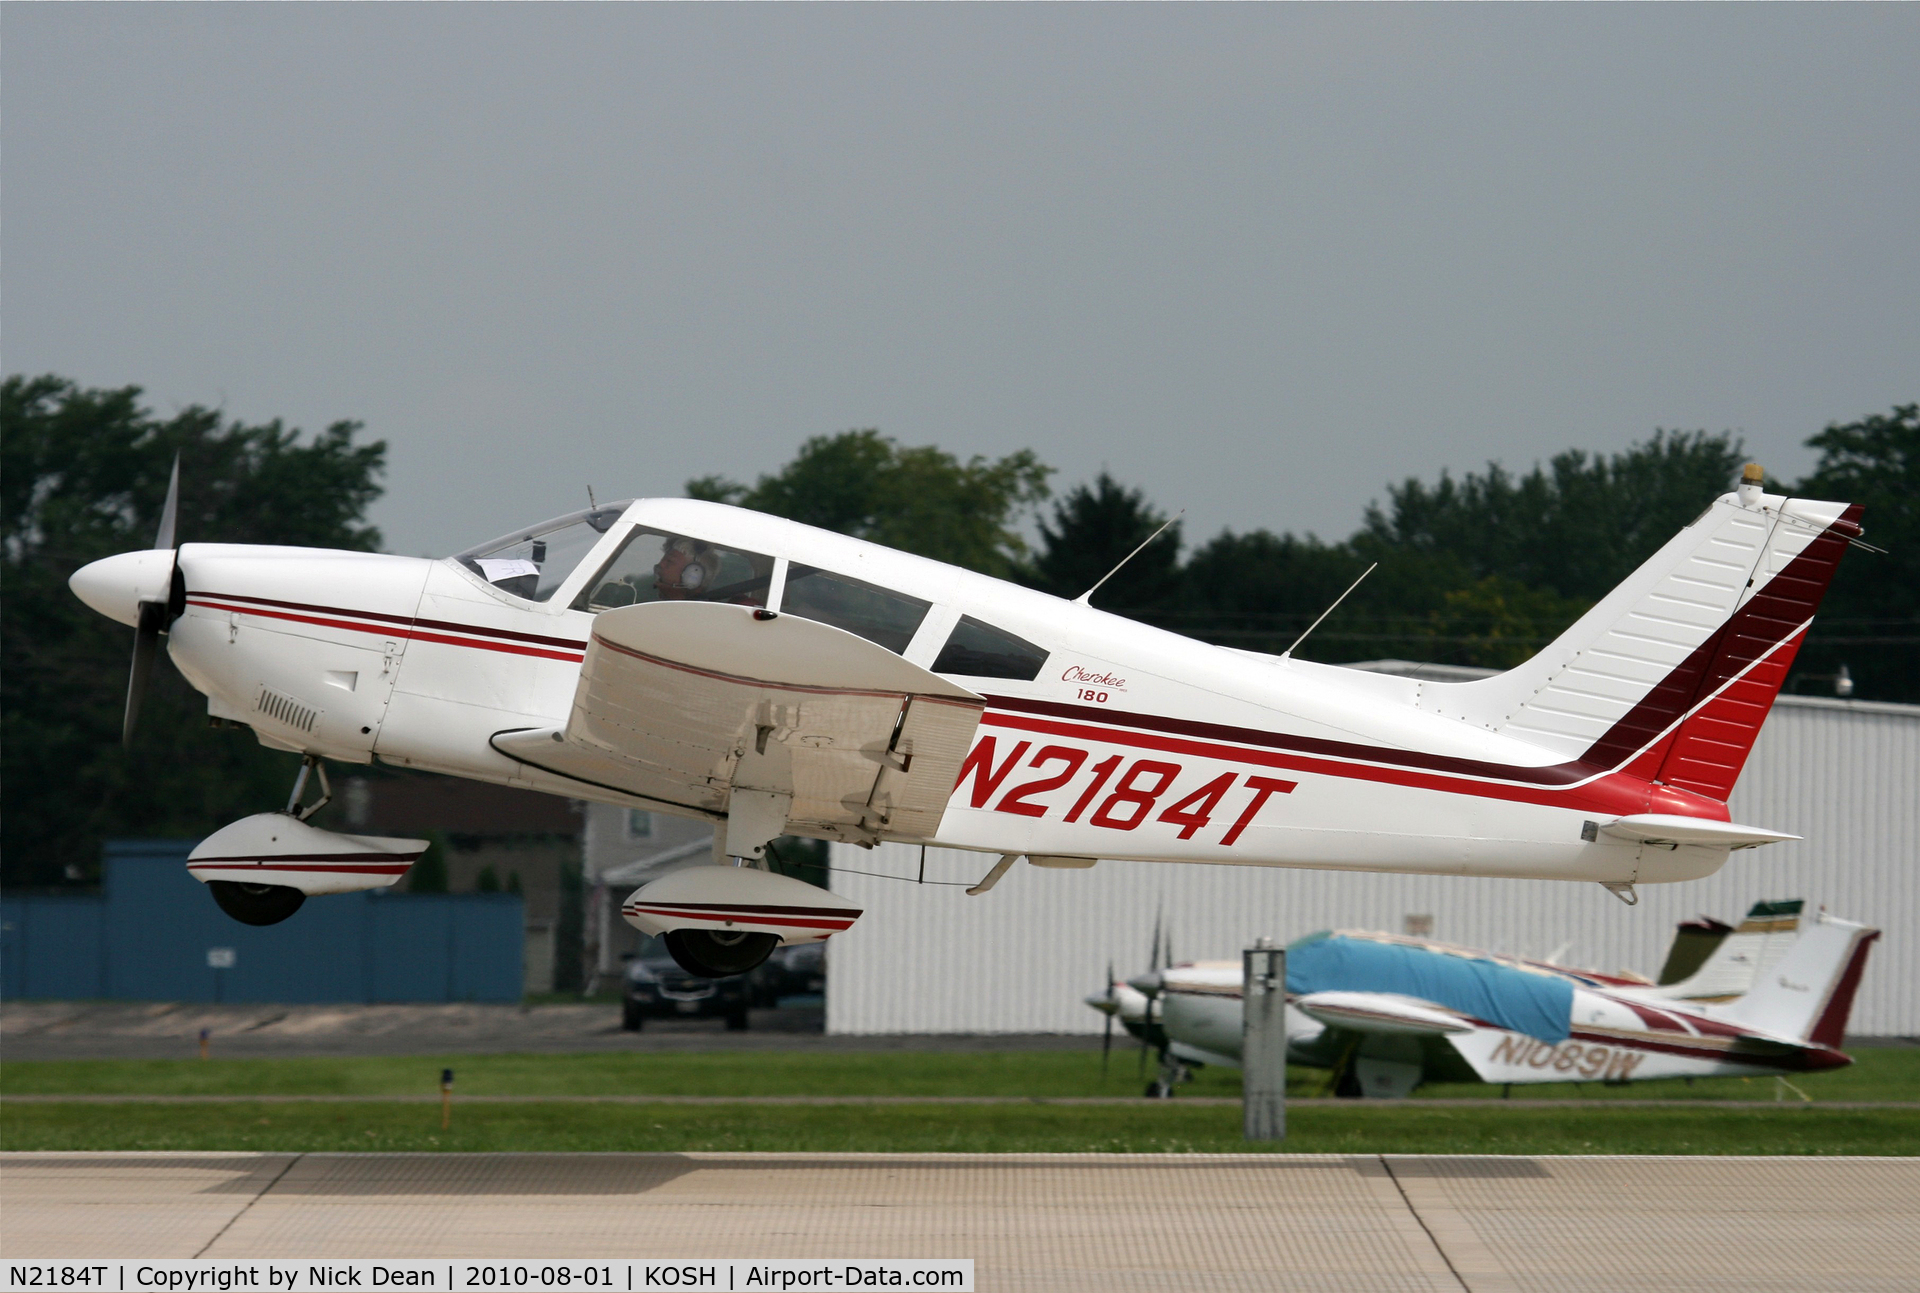 N2184T, 1971 Piper PA-28-180 C/N 28-7205028, KOSH